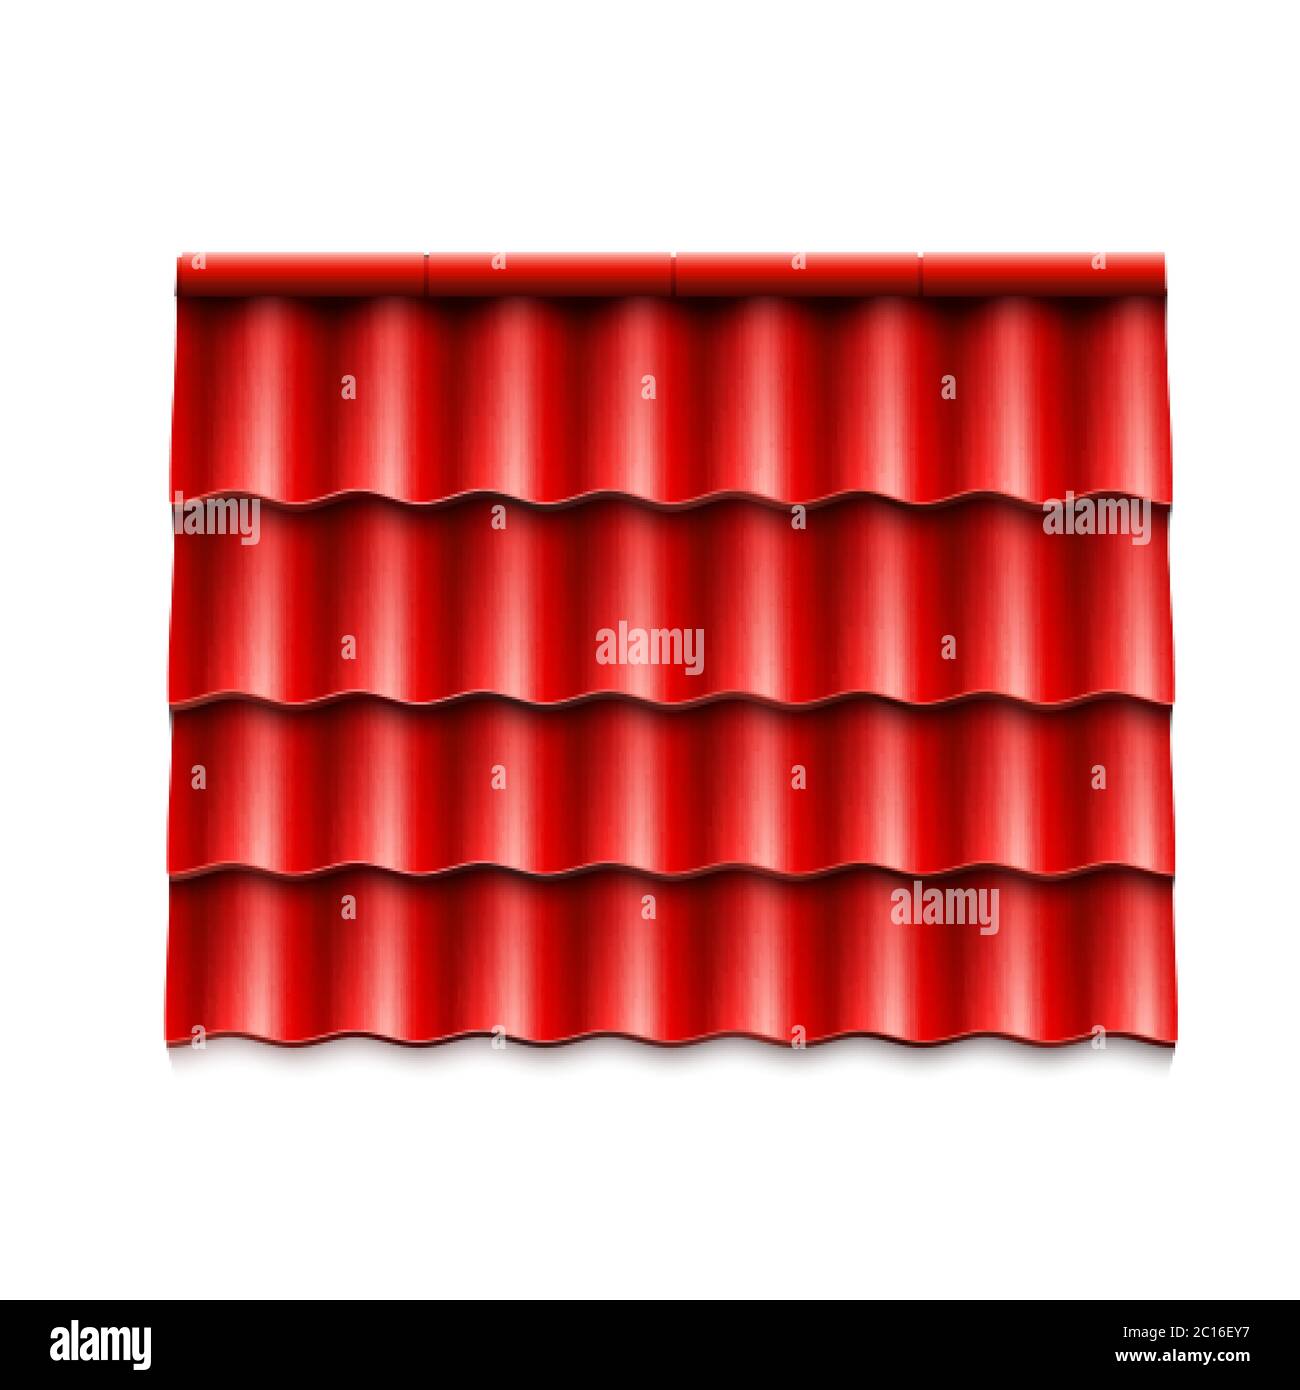 Coperture moderne del tetto. Tegola rossa del tetto corrugata. Illustrazione vettoriale isolata su sfondo bianco Illustrazione Vettoriale